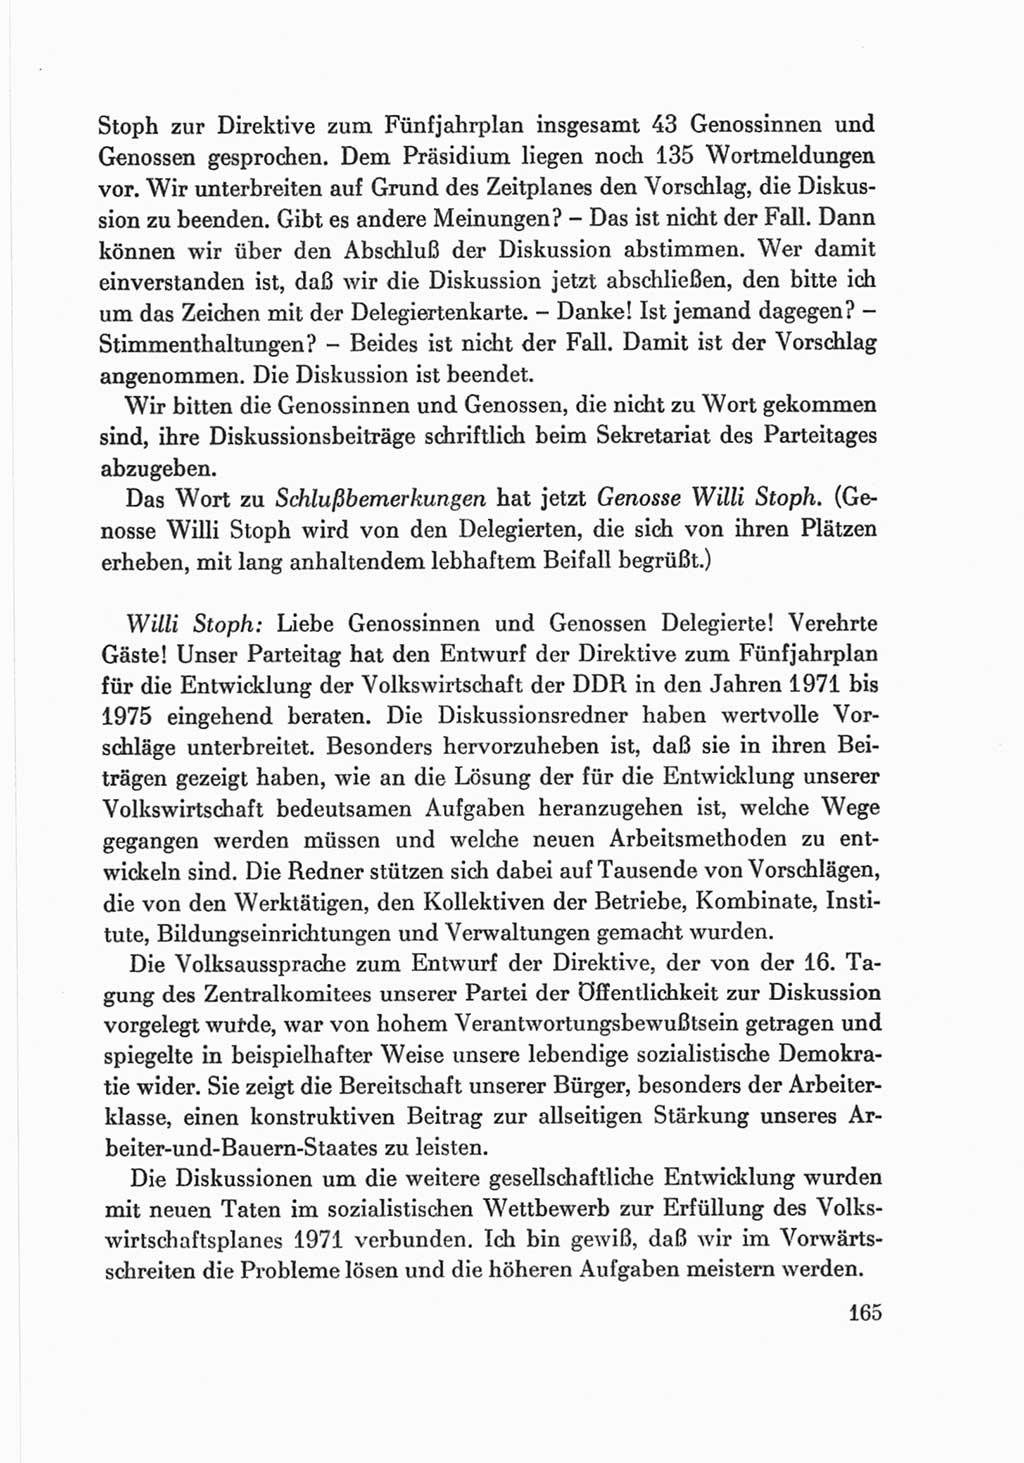 Protokoll der Verhandlungen des Ⅷ. Parteitages der Sozialistischen Einheitspartei Deutschlands (SED) [Deutsche Demokratische Republik (DDR)] 1971, Band 2, Seite 165 (Prot. Verh. Ⅷ. PT SED DDR 1971, Bd. 2, S. 165)